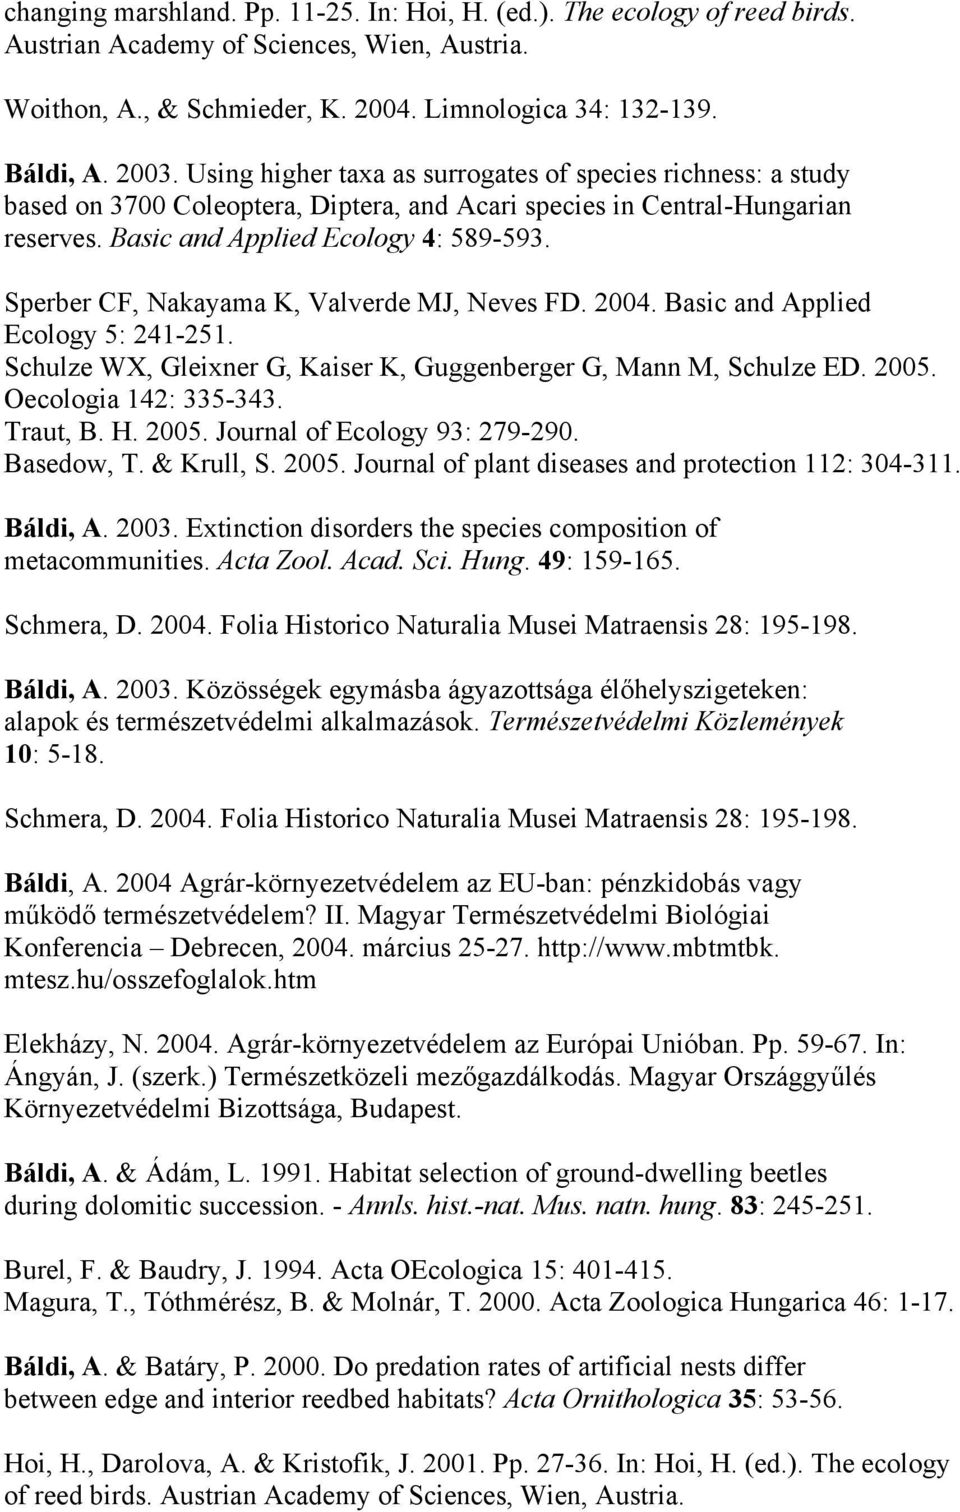 Sperber CF, Nakayama K, Valverde MJ, Neves FD. 2004. Basic and Applied Ecology 5: 241-251. Schulze WX, Gleixner G, Kaiser K, Guggenberger G, Mann M, Schulze ED. 2005. Oecologia 142: 335-343. Traut, B.